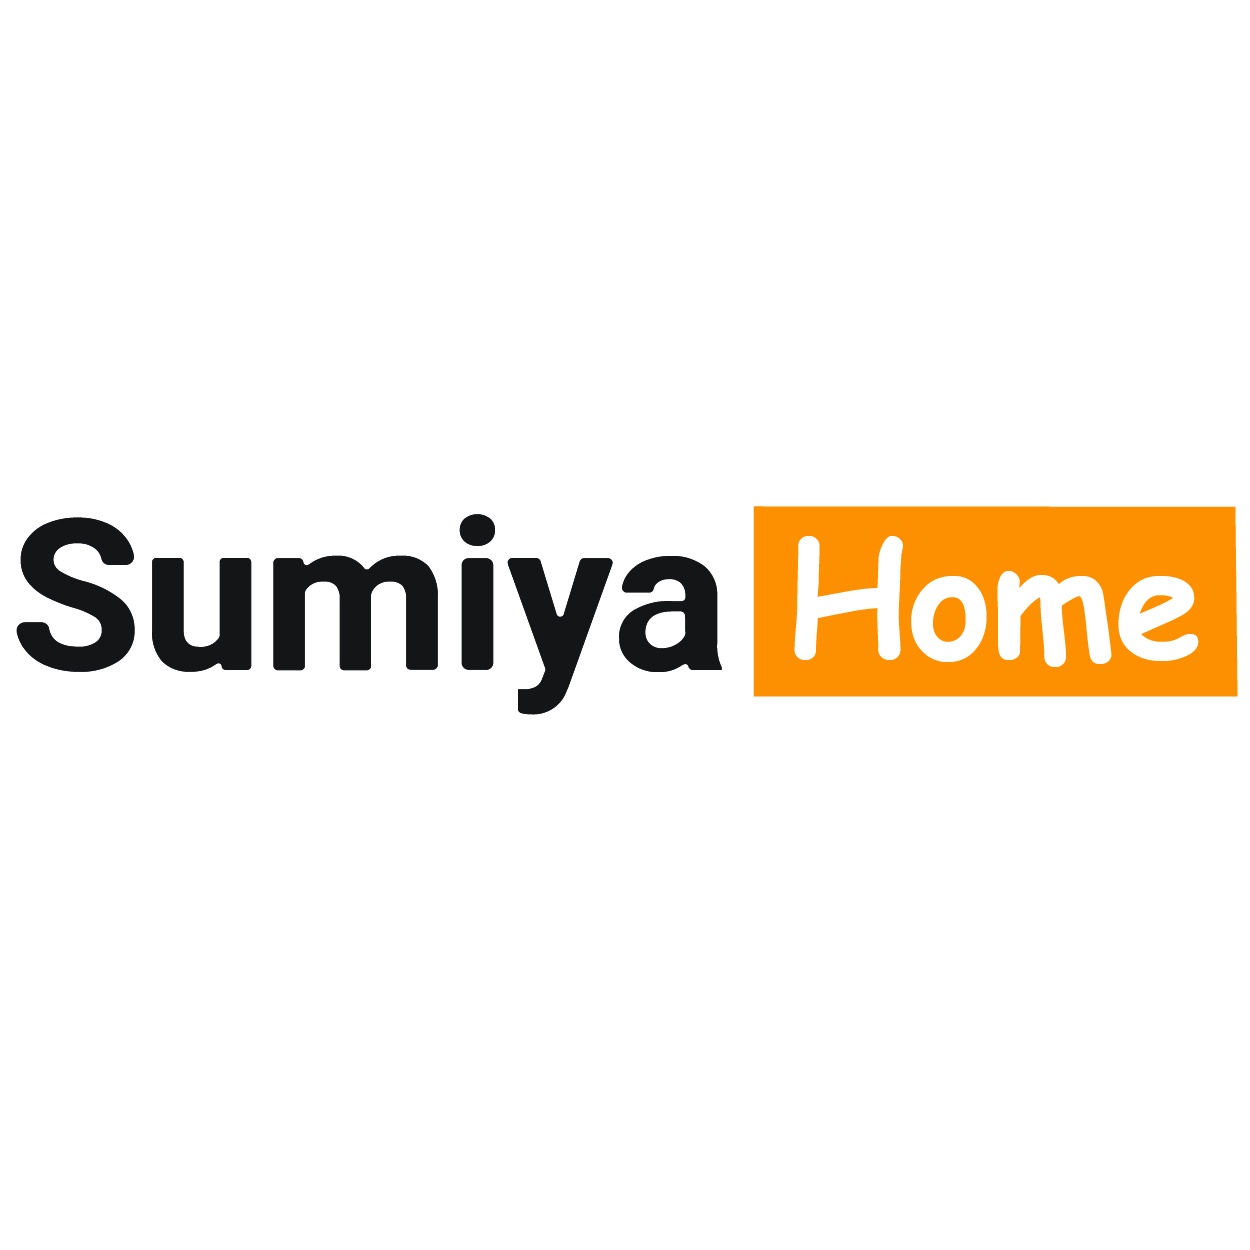 SUMIYA logo